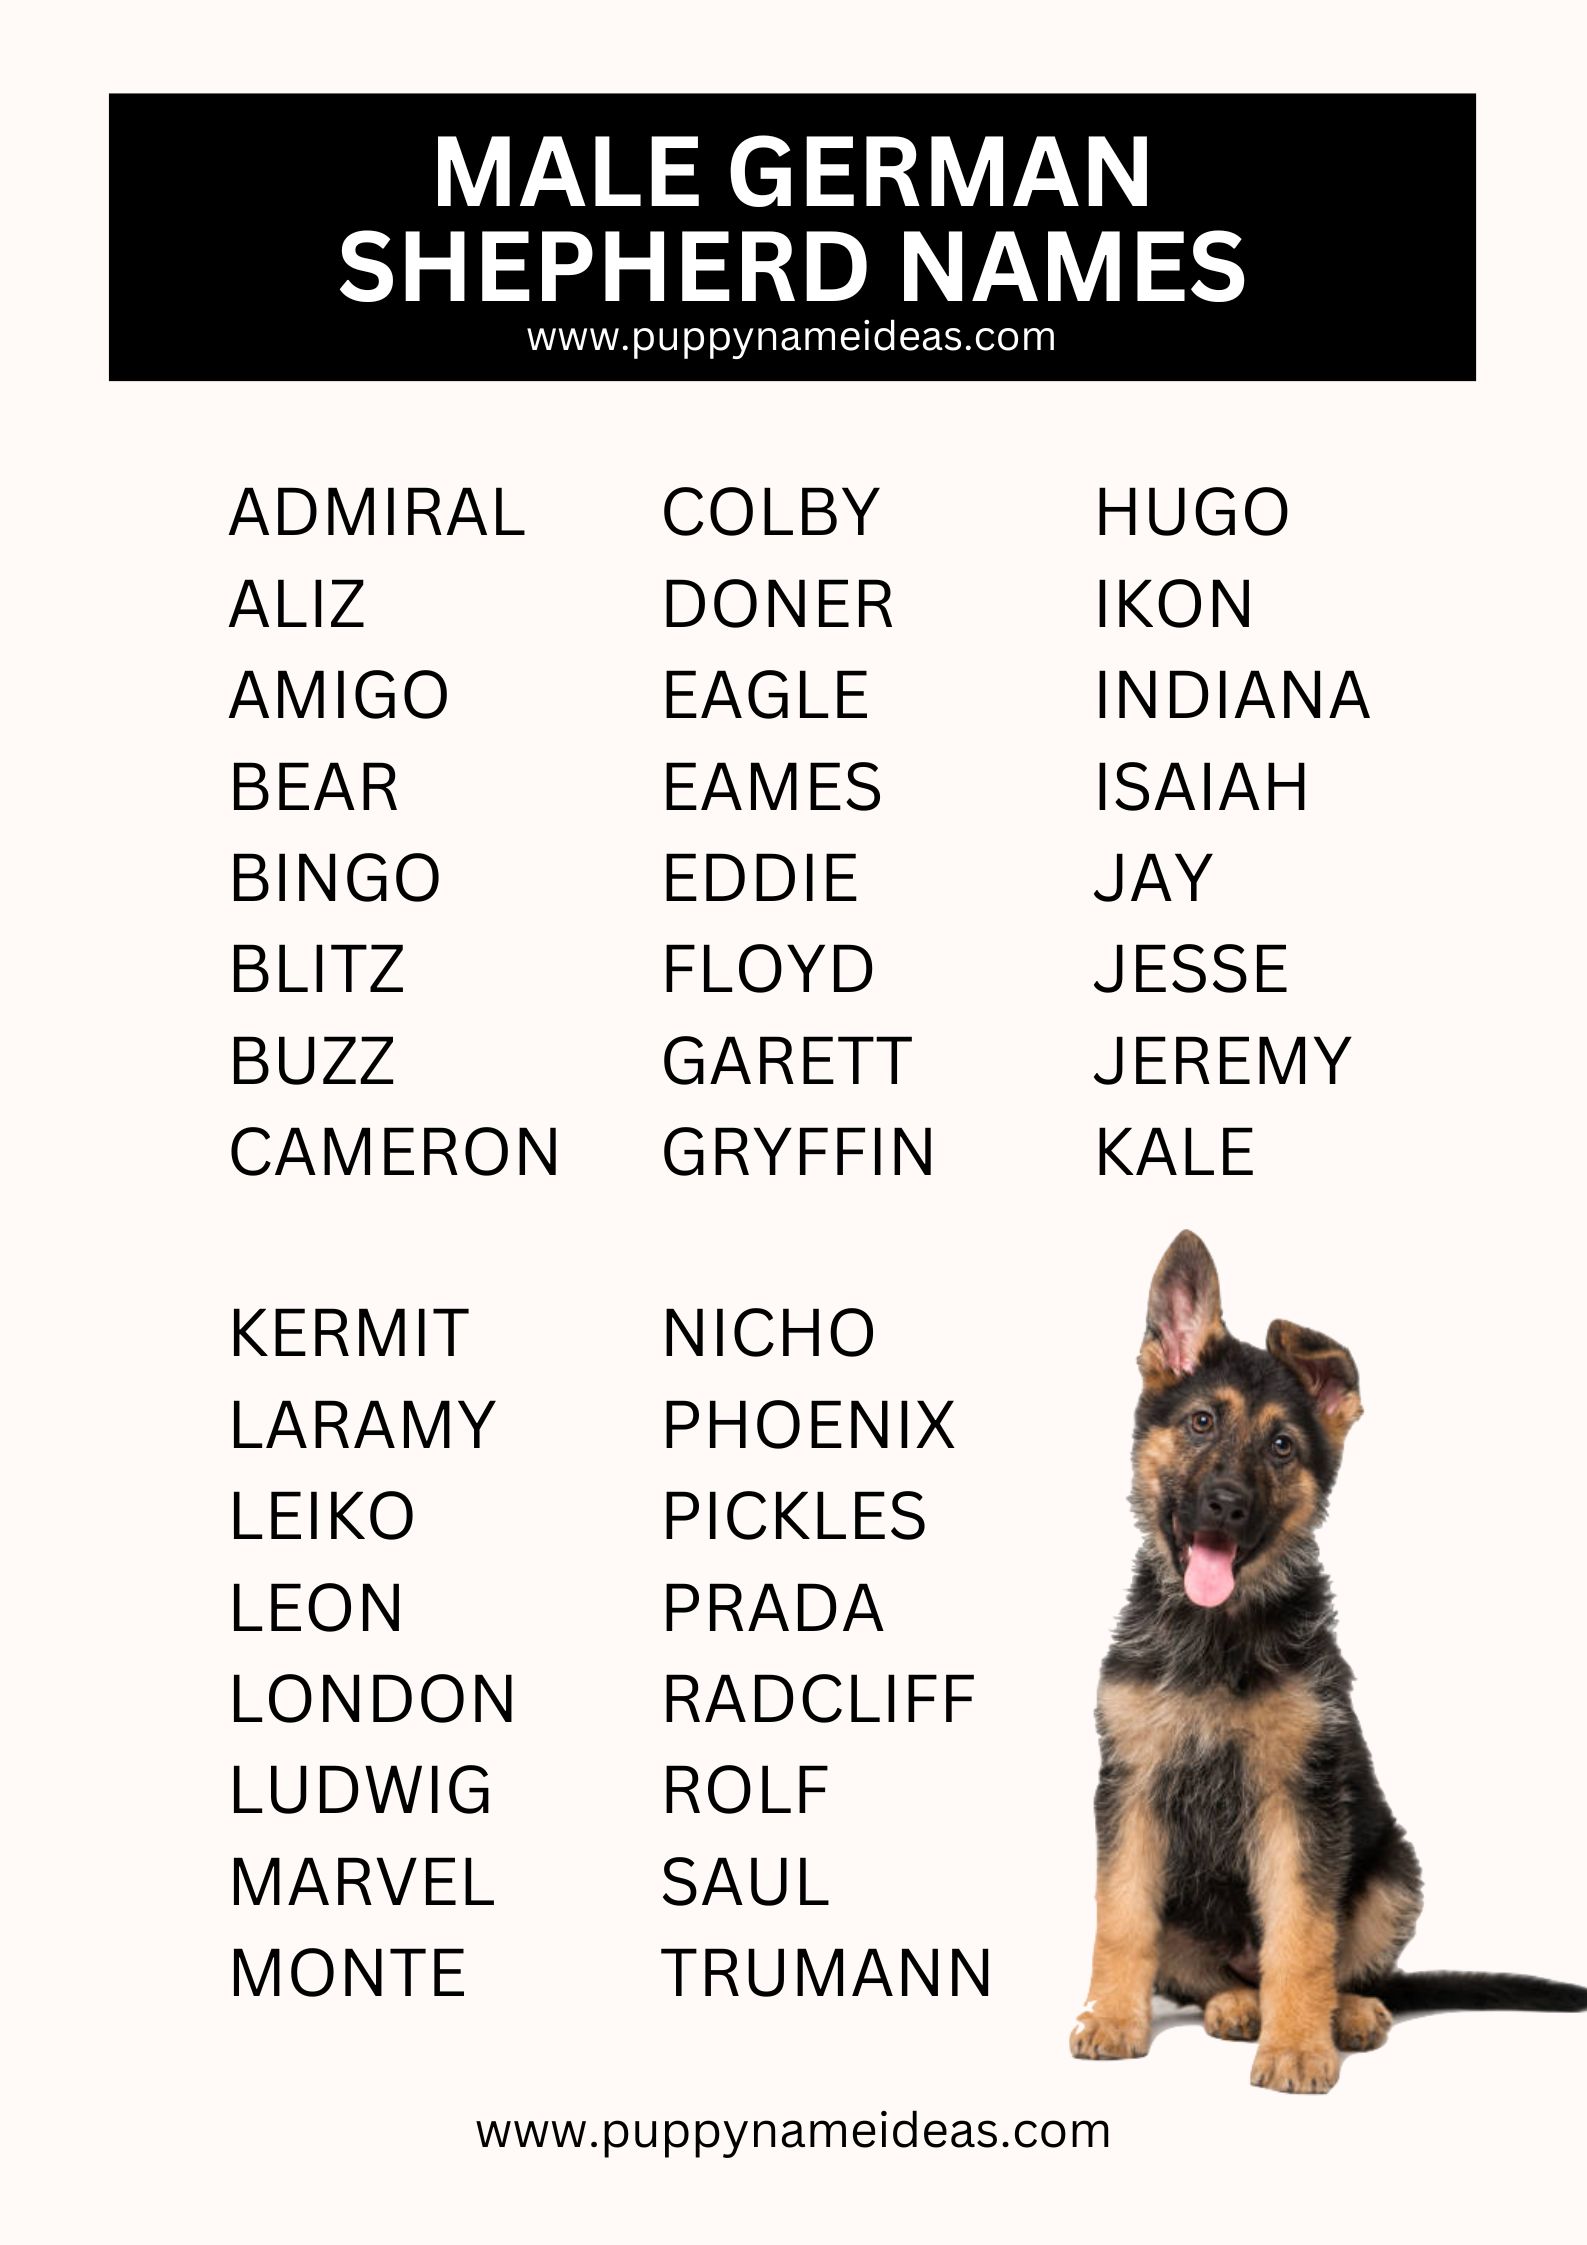 List Of Male German Shepherd Names